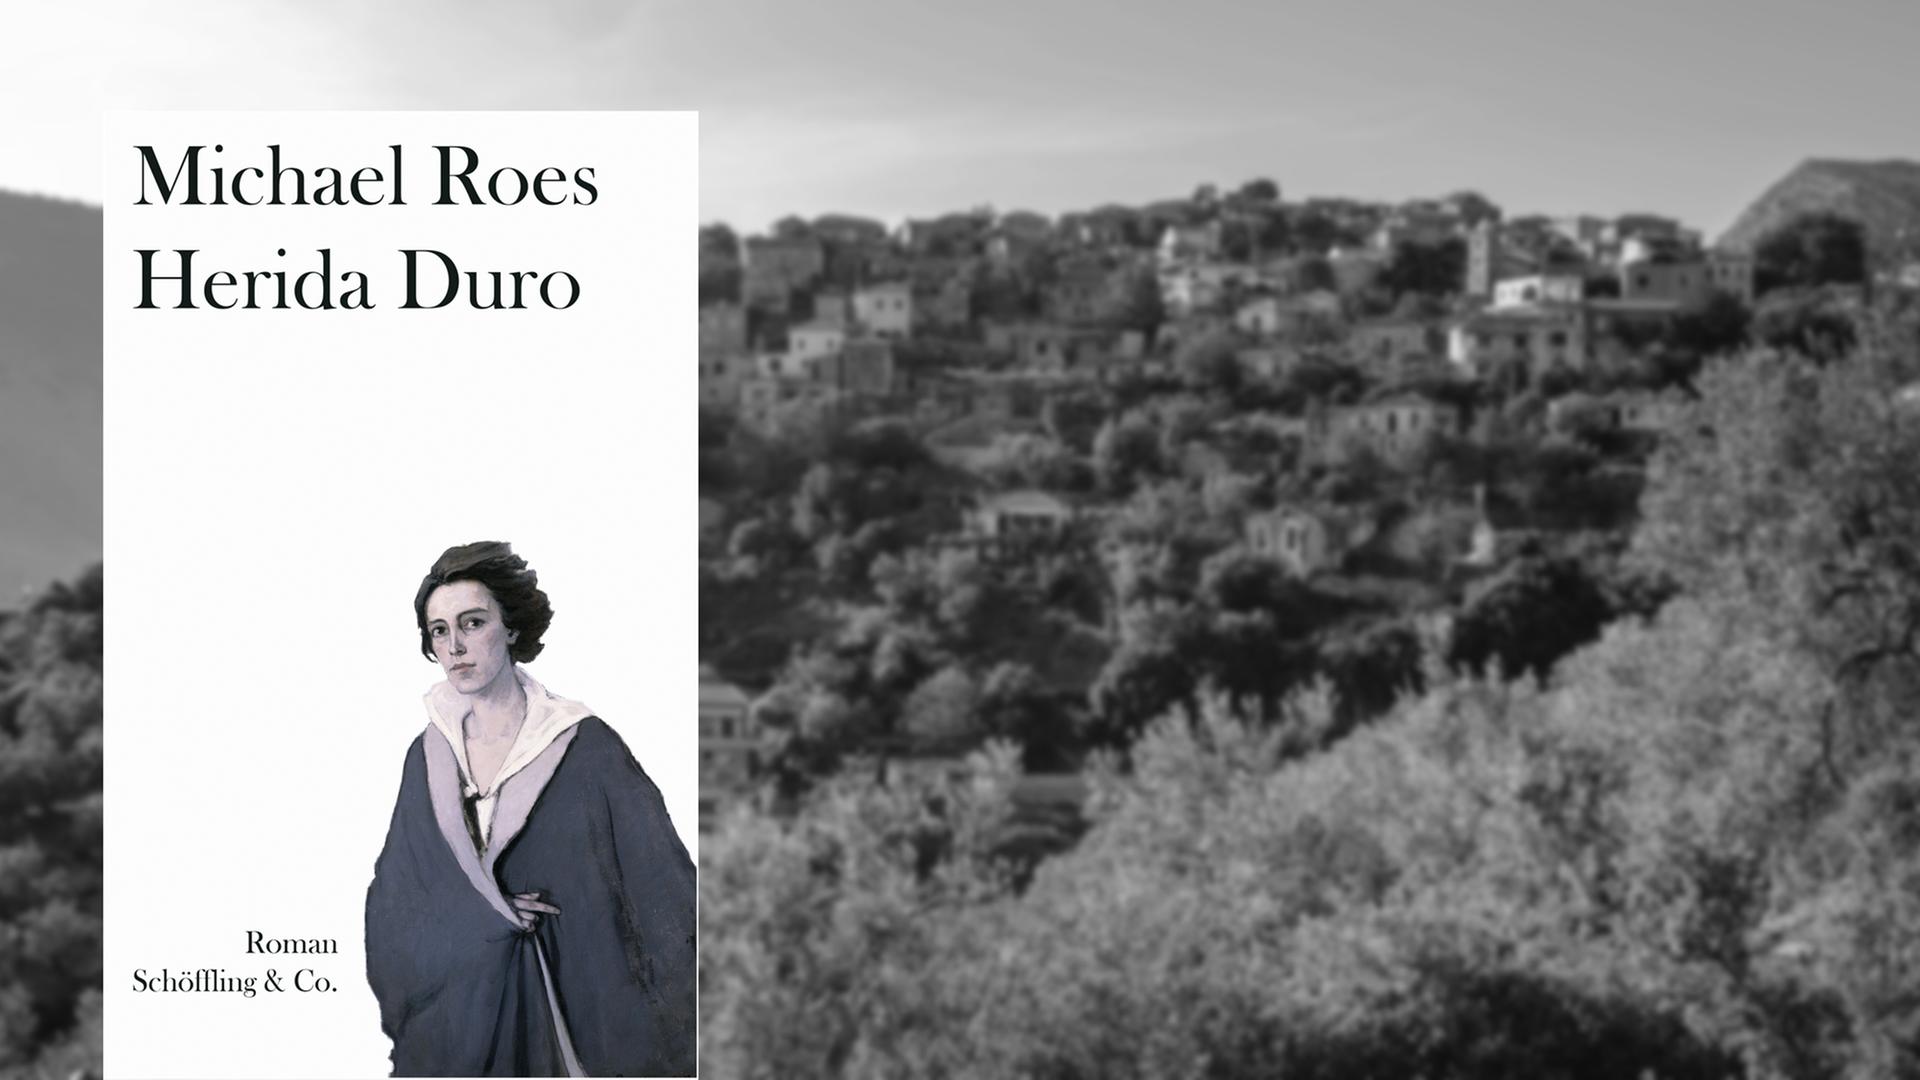 Cover des Romans "Herida Duro" von Michael Roes vor dem Hintergrund eines albanischen Bergdorfs: Auf einem Schwarz-Weiß-Bild sind Häuser über einen mit Bäumen bewachsenen Hügel verteilt.